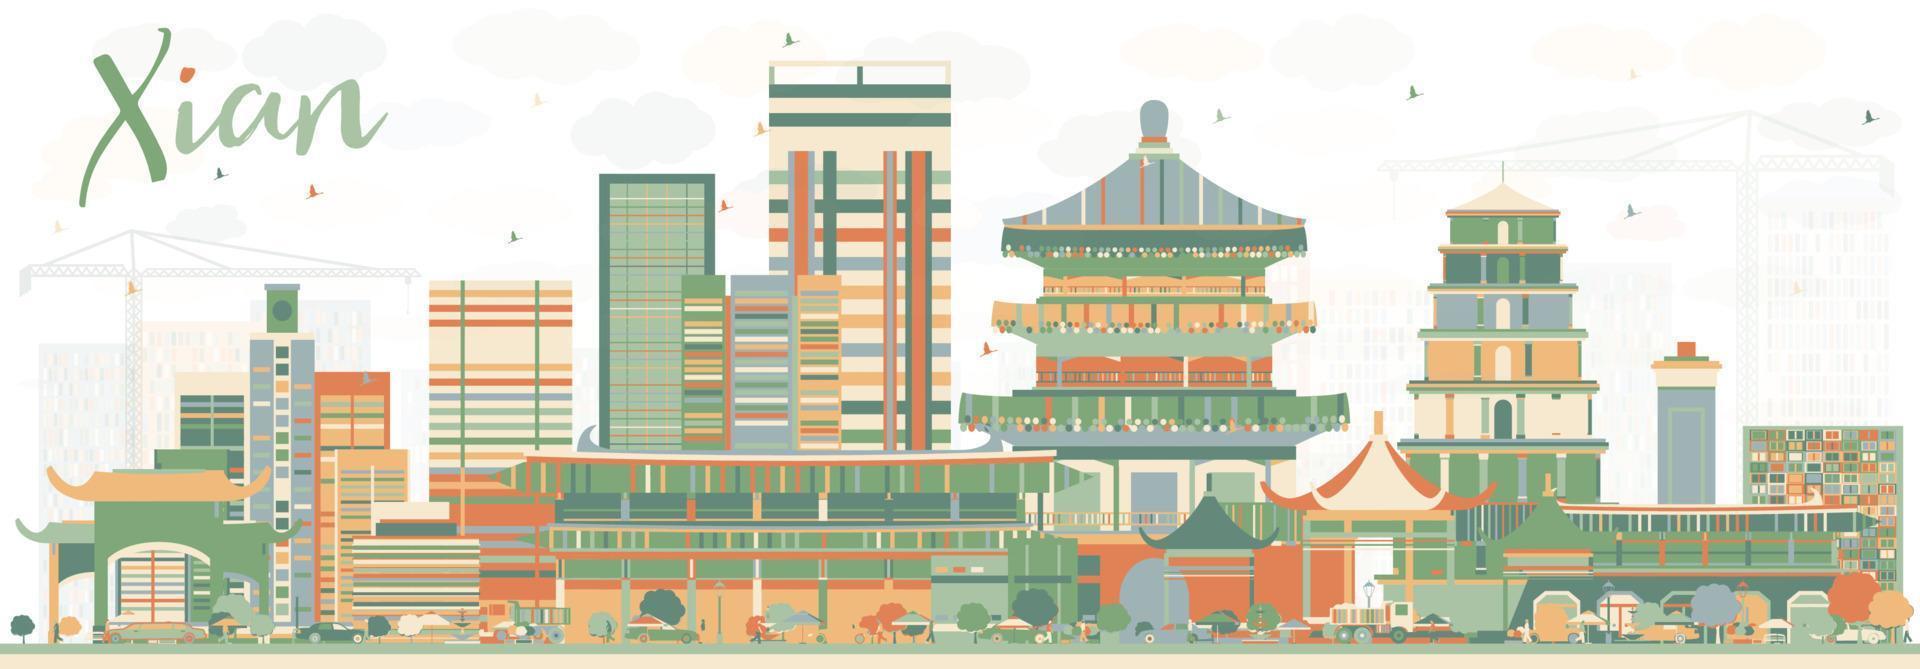 horizonte abstracto de xian con edificios de color. vector